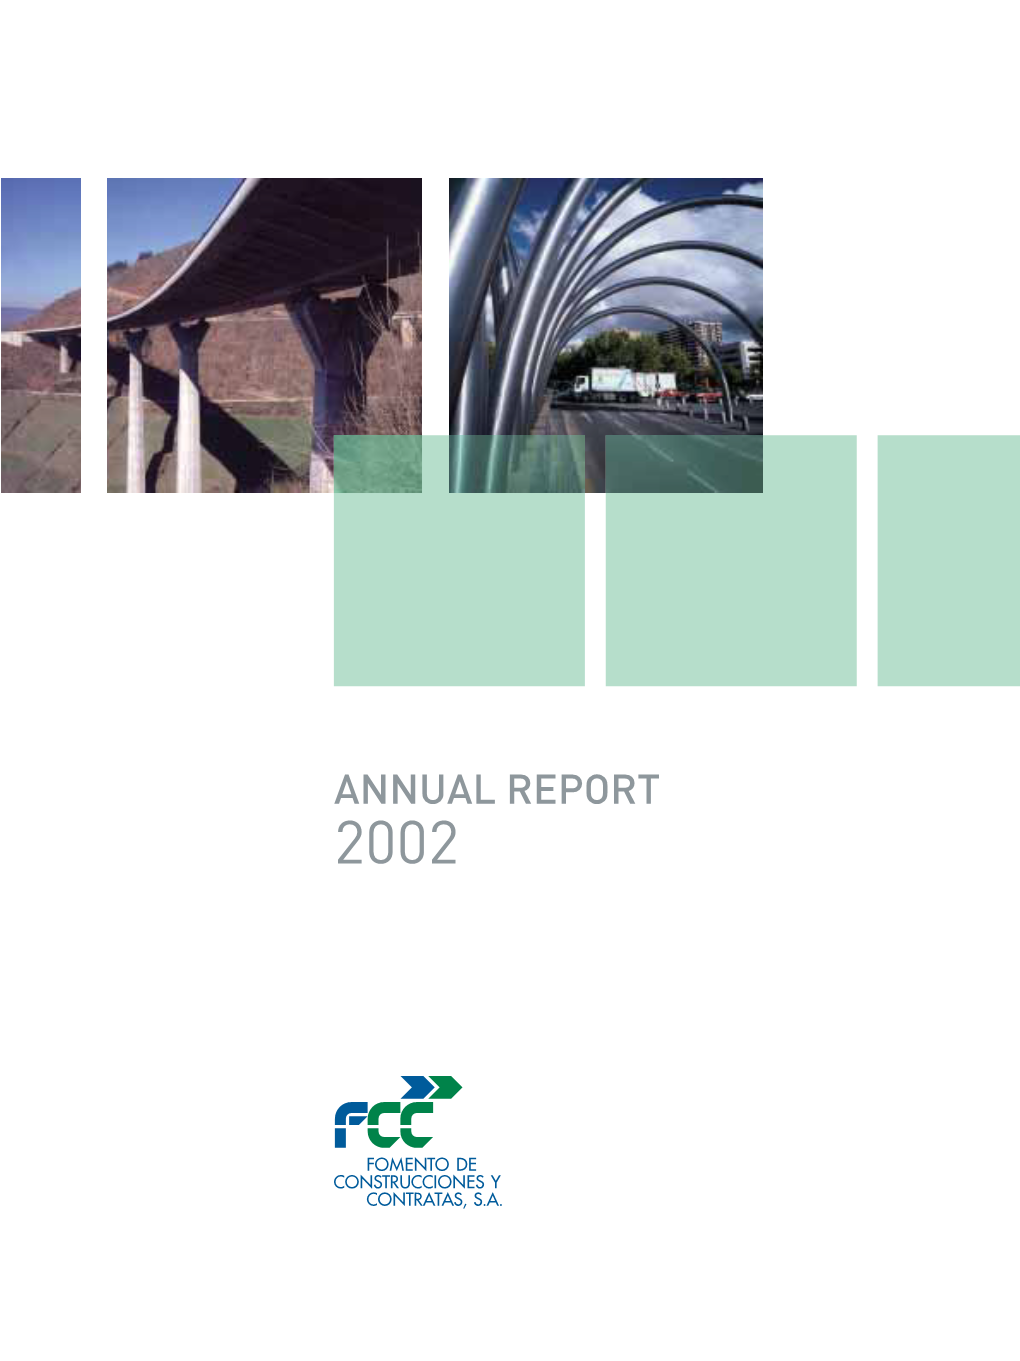 Annual Report 2002. Fomento De Construcciones Y Contratas, S.A